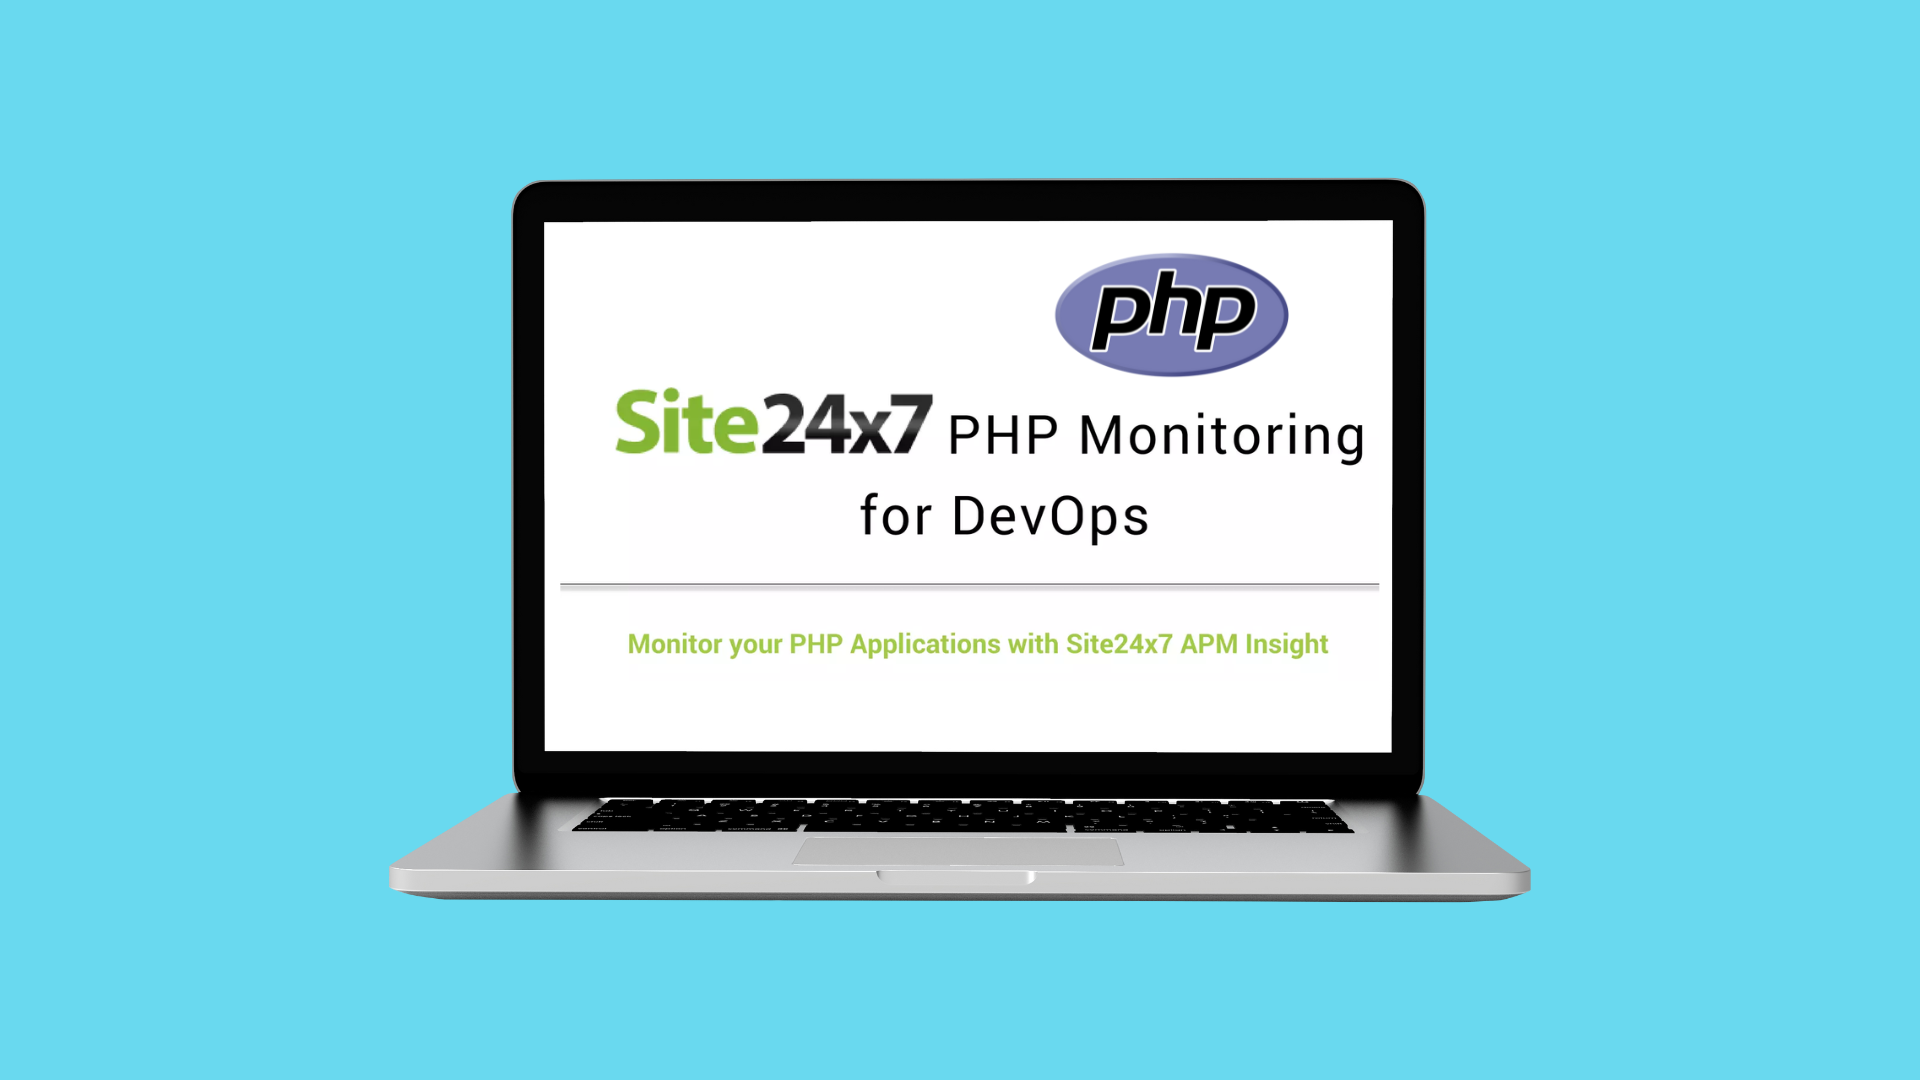 Supervisión PHP con Site24x7: Optimiza el Rendimiento de las Apps